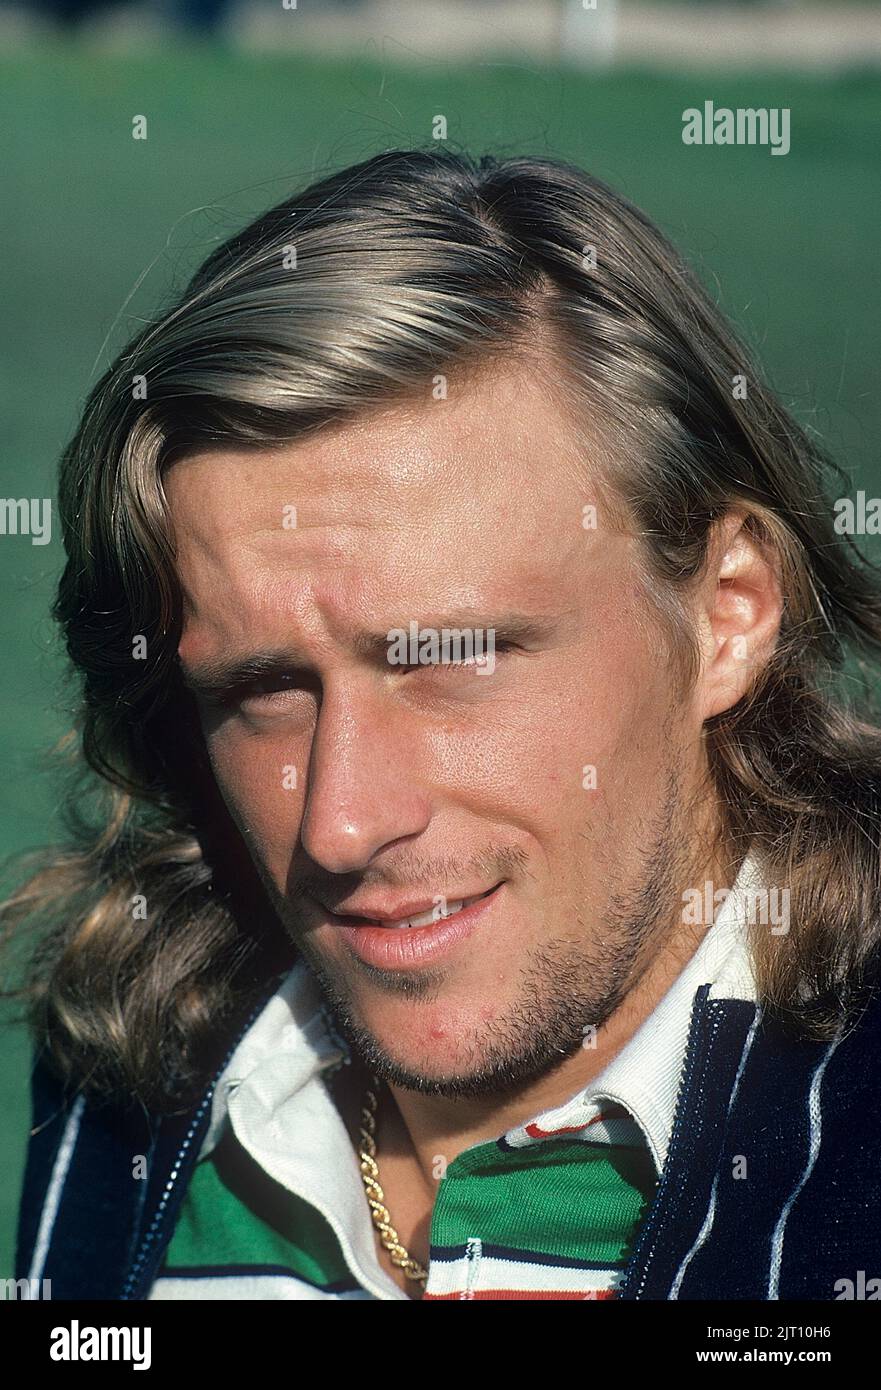 Bjorn Borg. Ehemaliger Welt kein 1 Tennisspieler geboren 6 1956. juni. Er war der erste Mann in der Open-Ära, der 11 Grand-Slam-Einzeltitel mit sechs bei den französischen Open und fünf aufeinanderfolgenden Siegen in Wimbledon gewann. Hier abgebildet 1977. Stockfoto